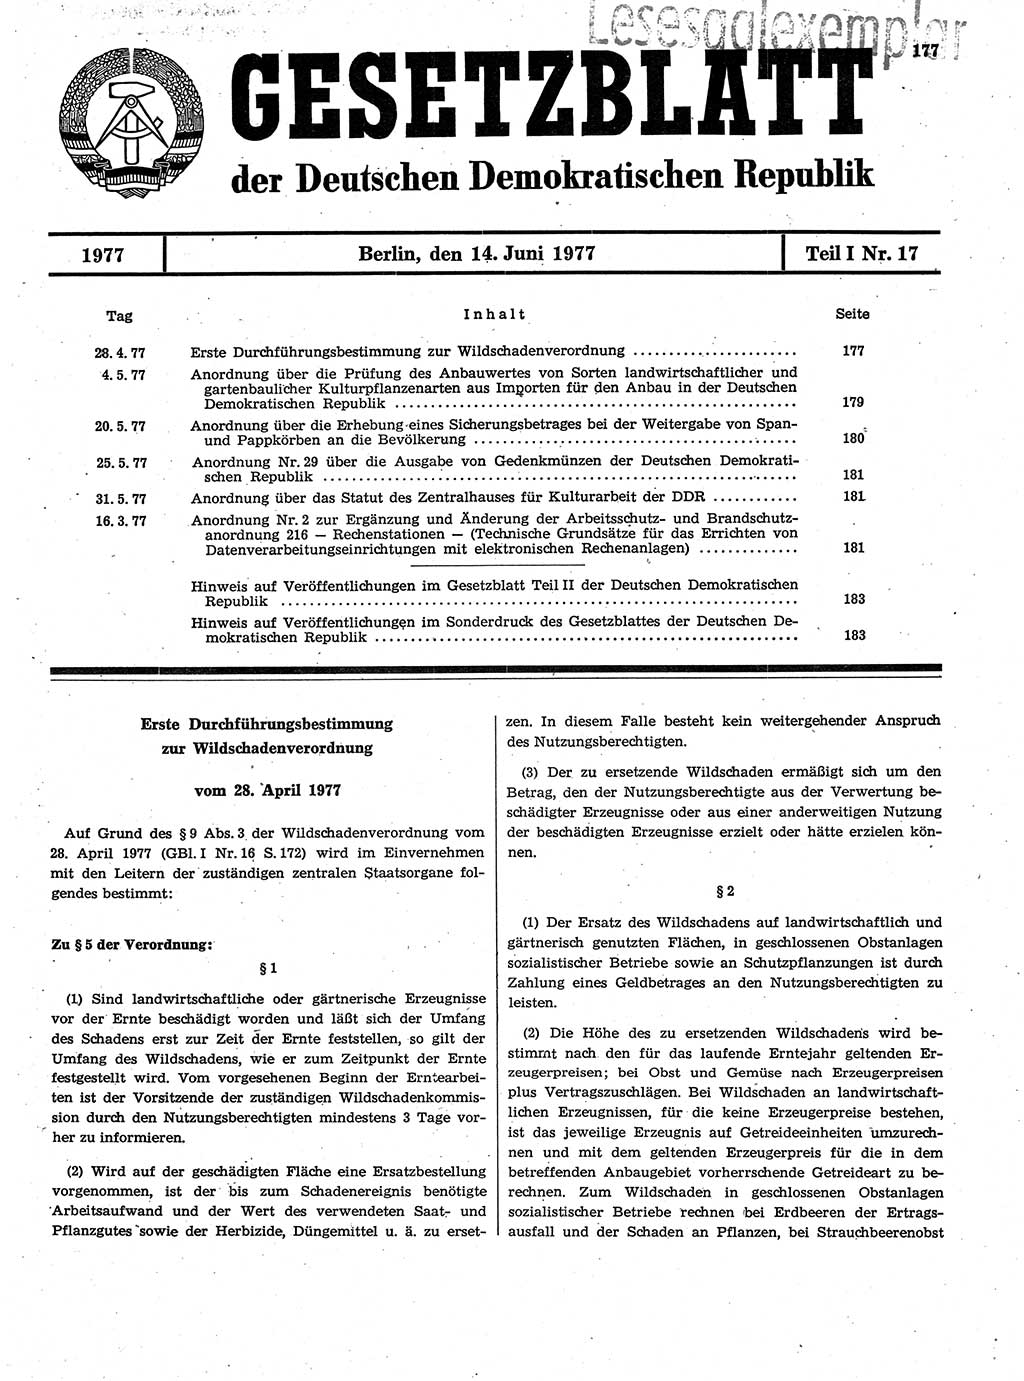 Gesetzblatt (GBl.) der Deutschen Demokratischen Republik (DDR) Teil Ⅰ 1977, Seite 177 (GBl. DDR Ⅰ 1977, S. 177)